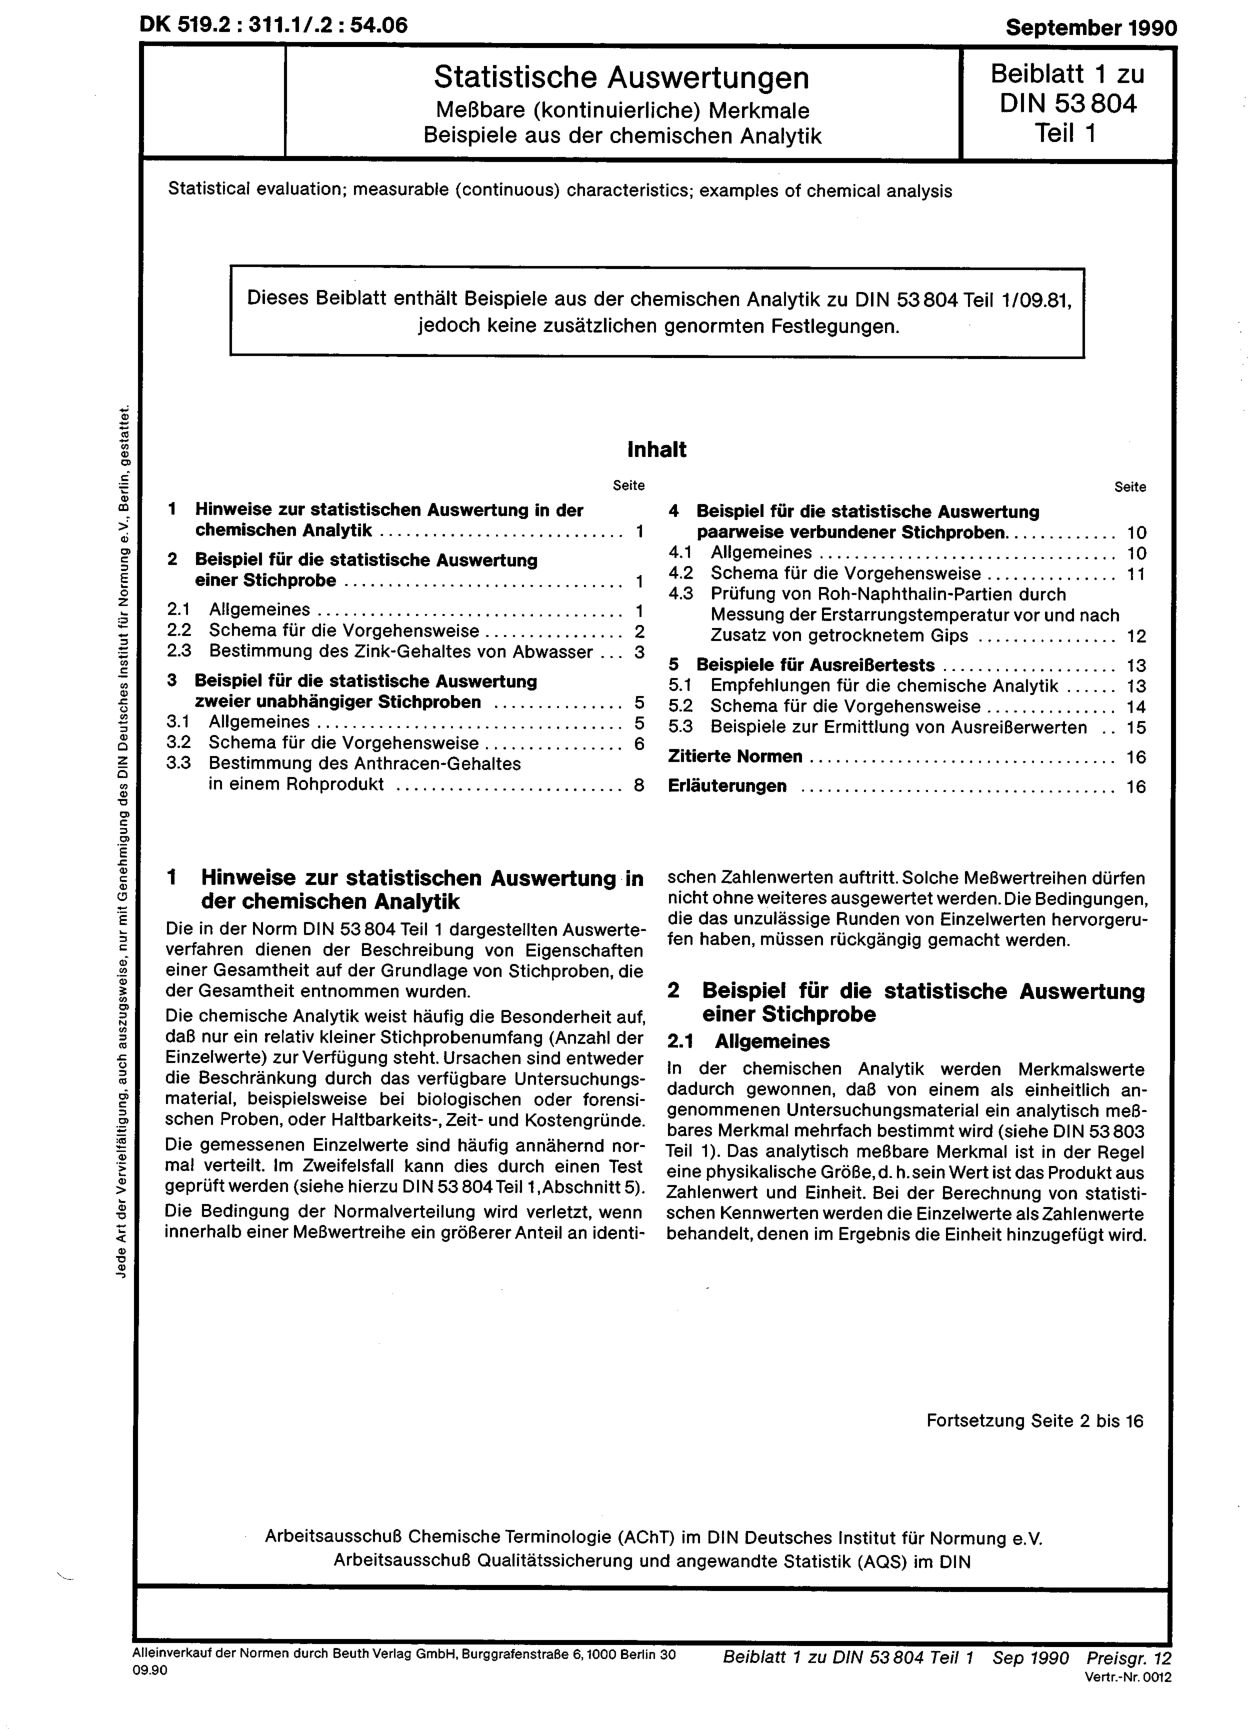 DIN 53804-1 Beiblatt 1:1990封面图